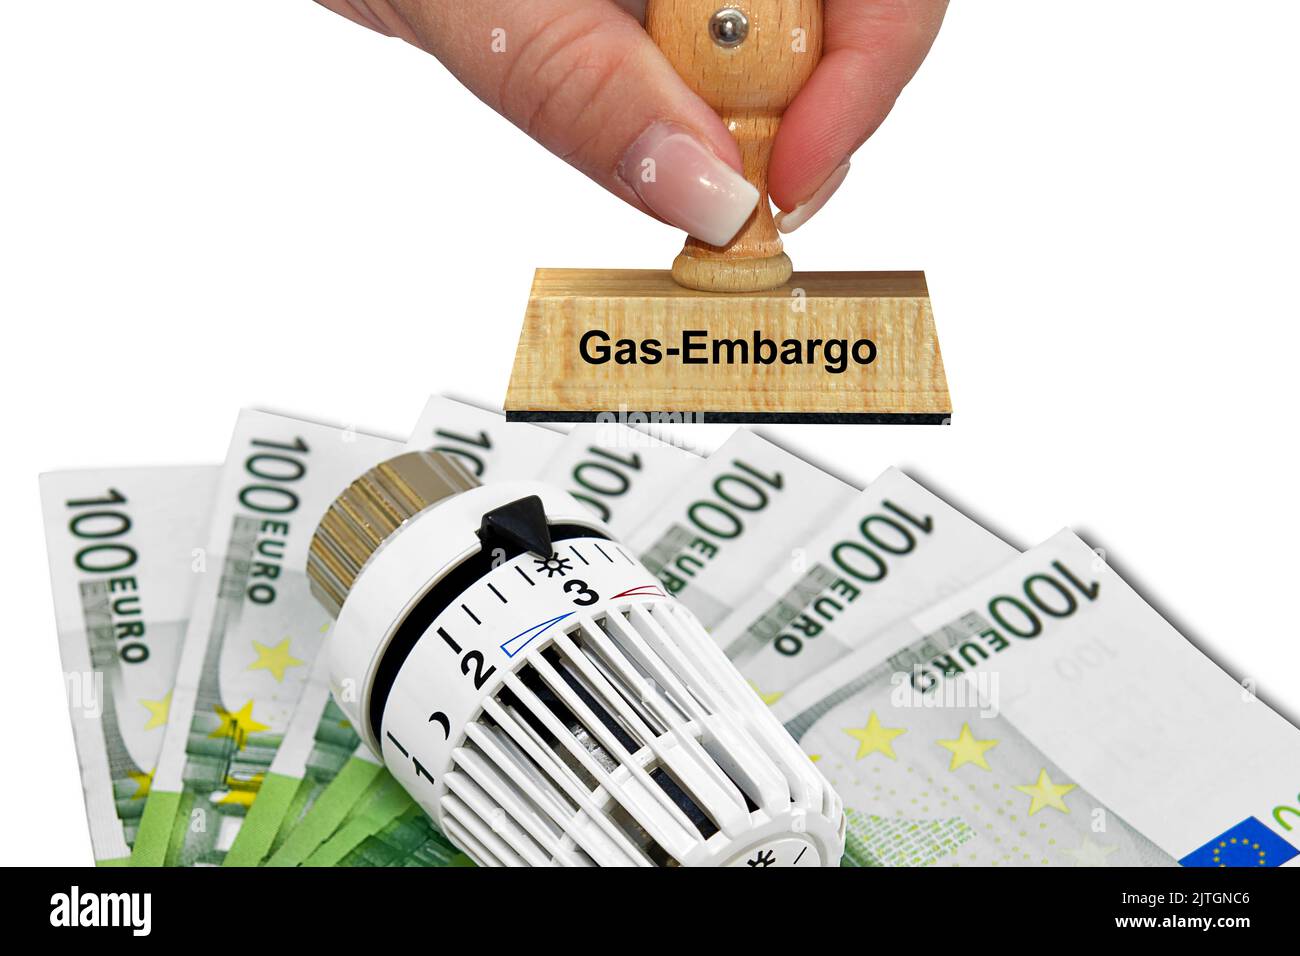 Heizthermostat, Banknoten und Stempel „Gas-Embargo“, steigende Heizkosten Stockfoto